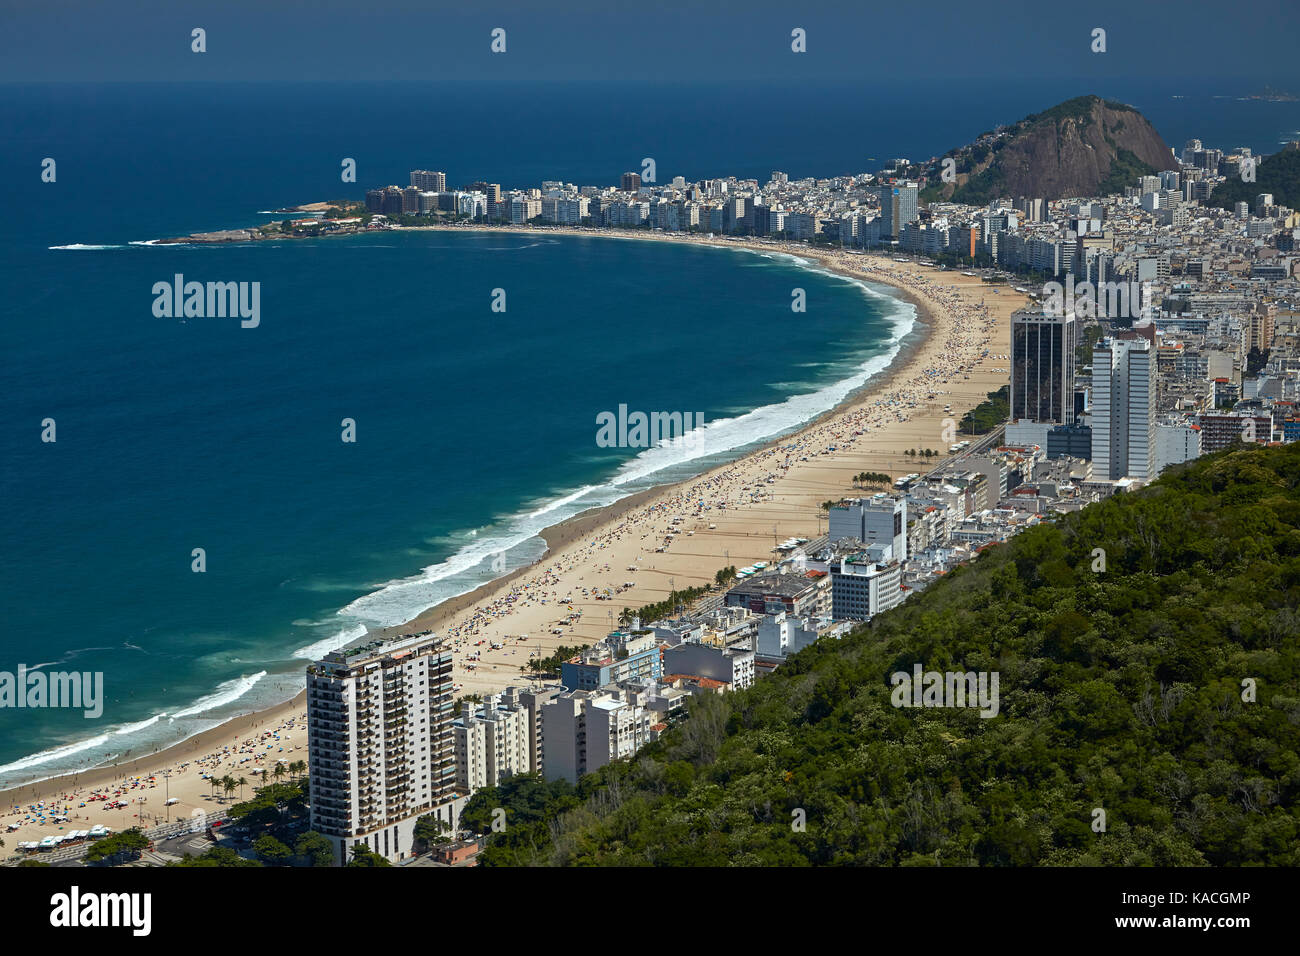 La plage de Copacabana, Rio de Janeiro, Brésil, Amérique du sud - vue aérienne Banque D'Images